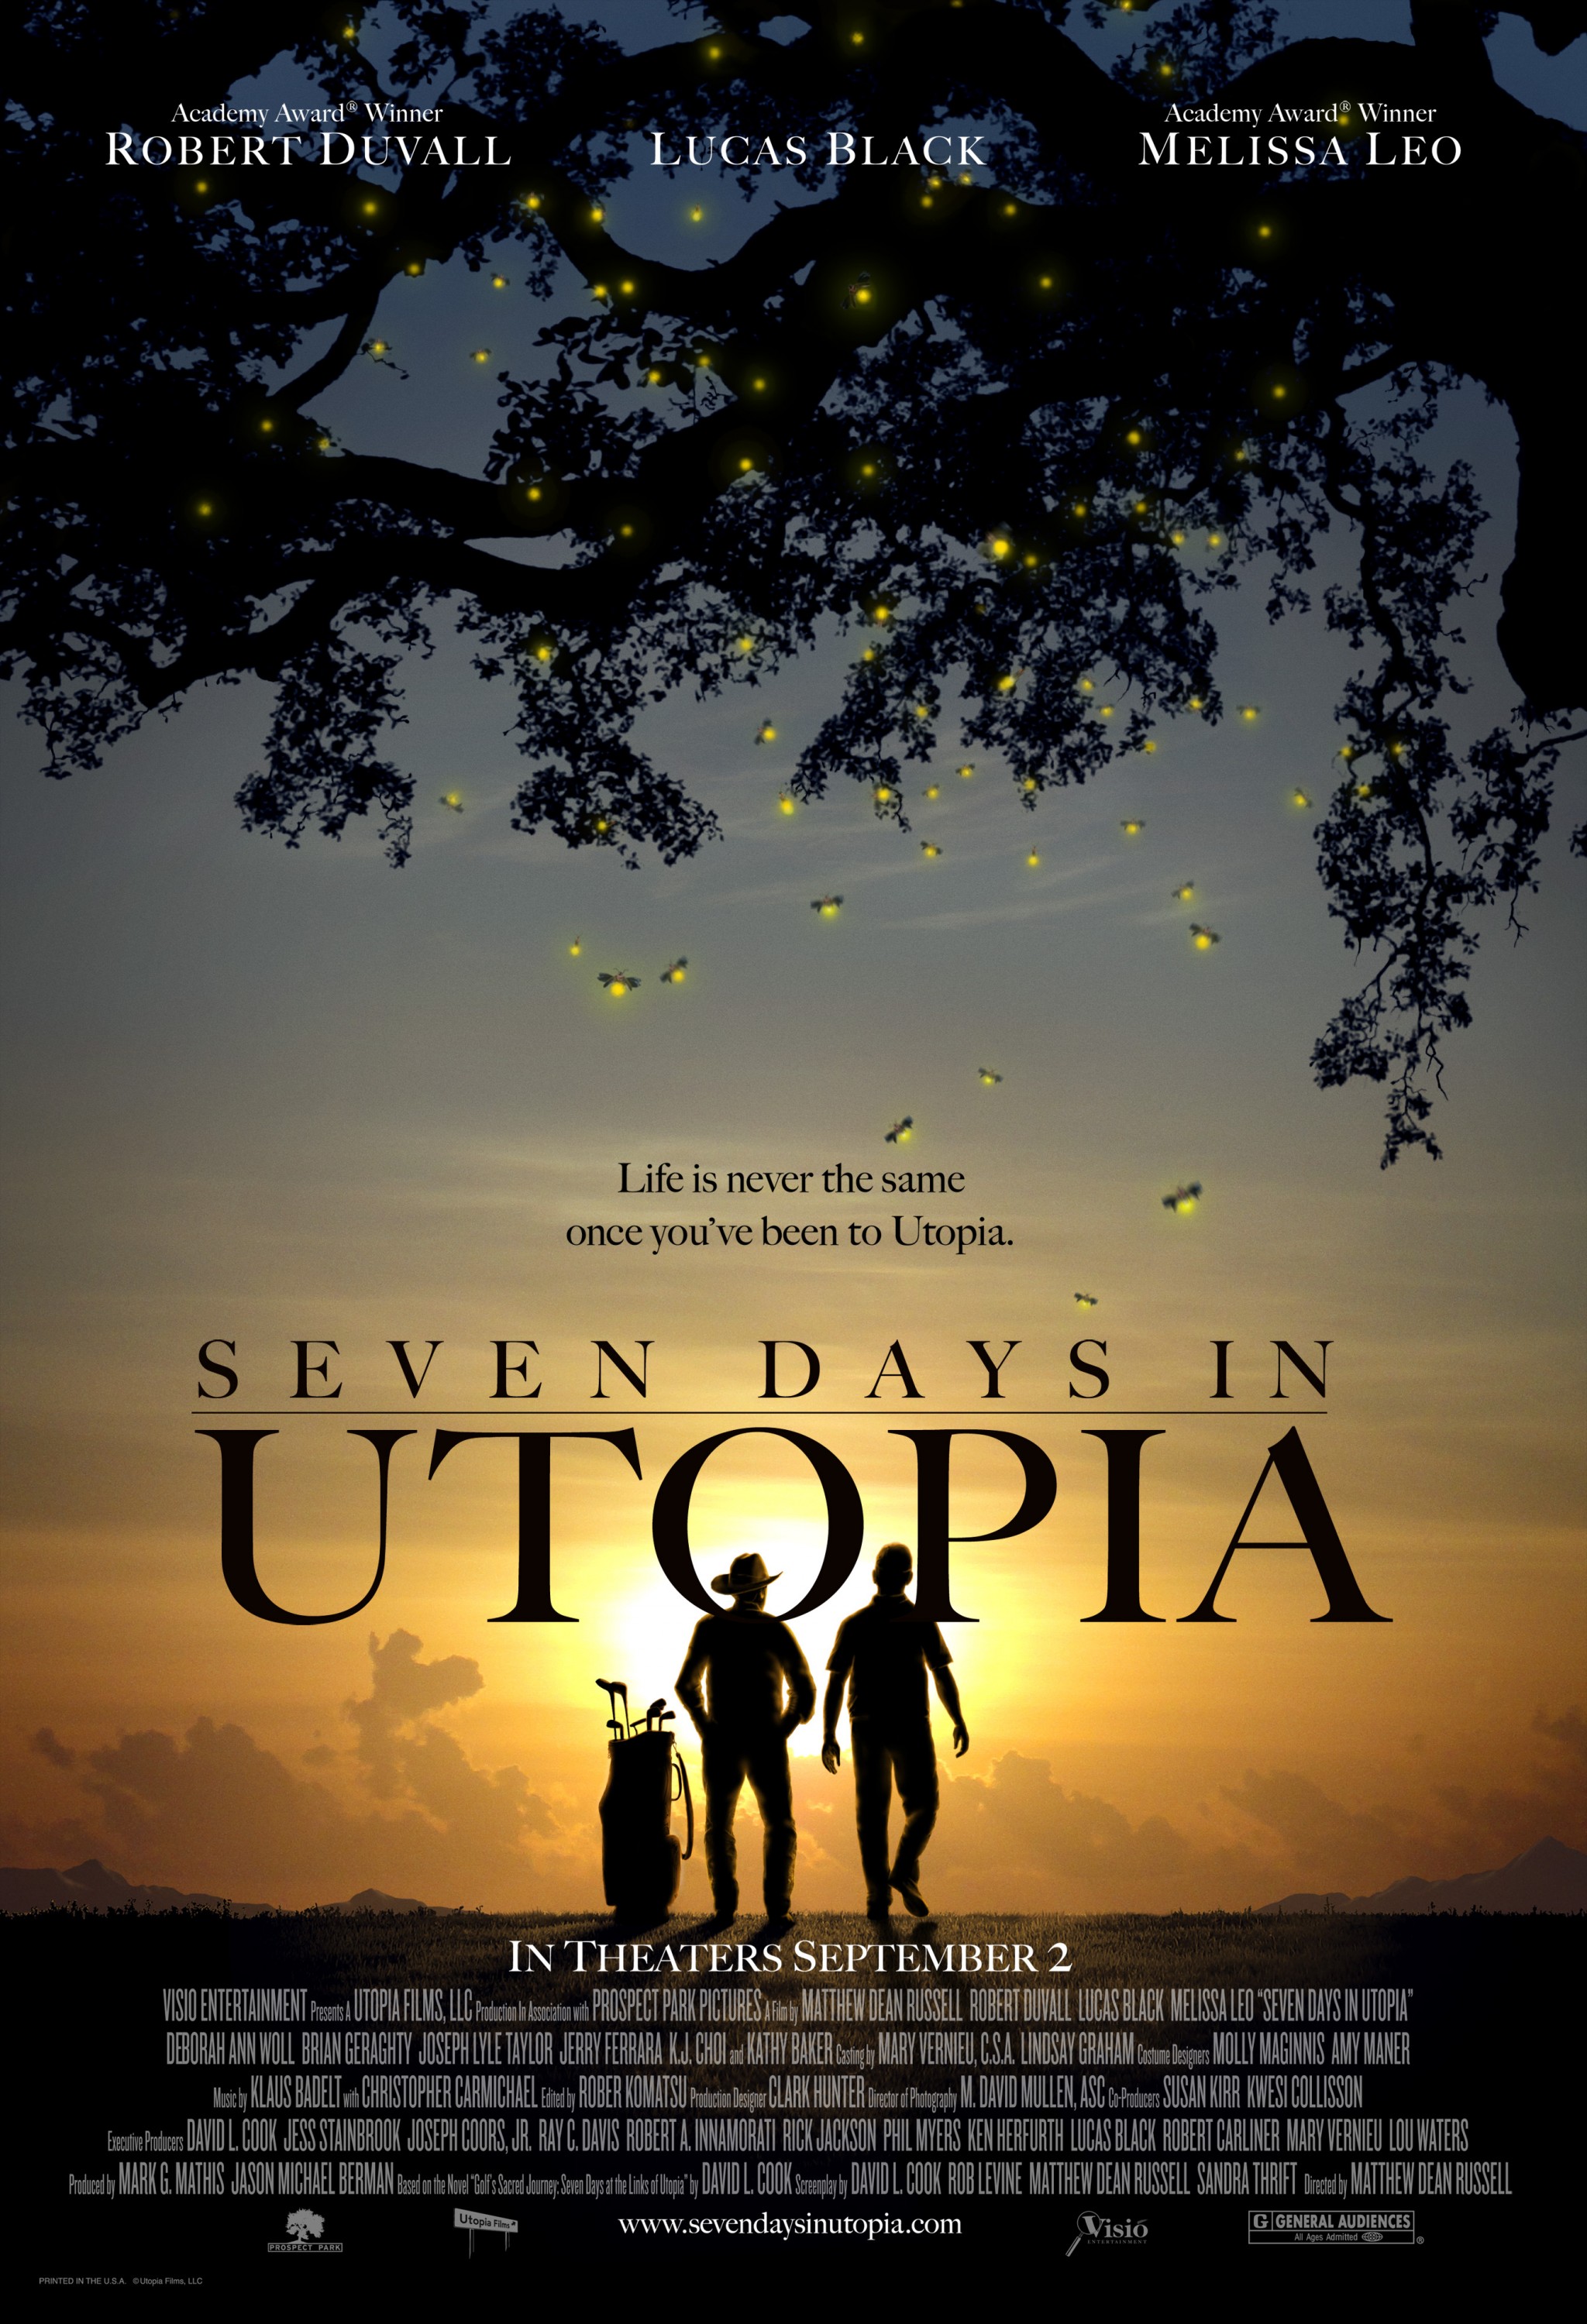 seven days in utopia book summary